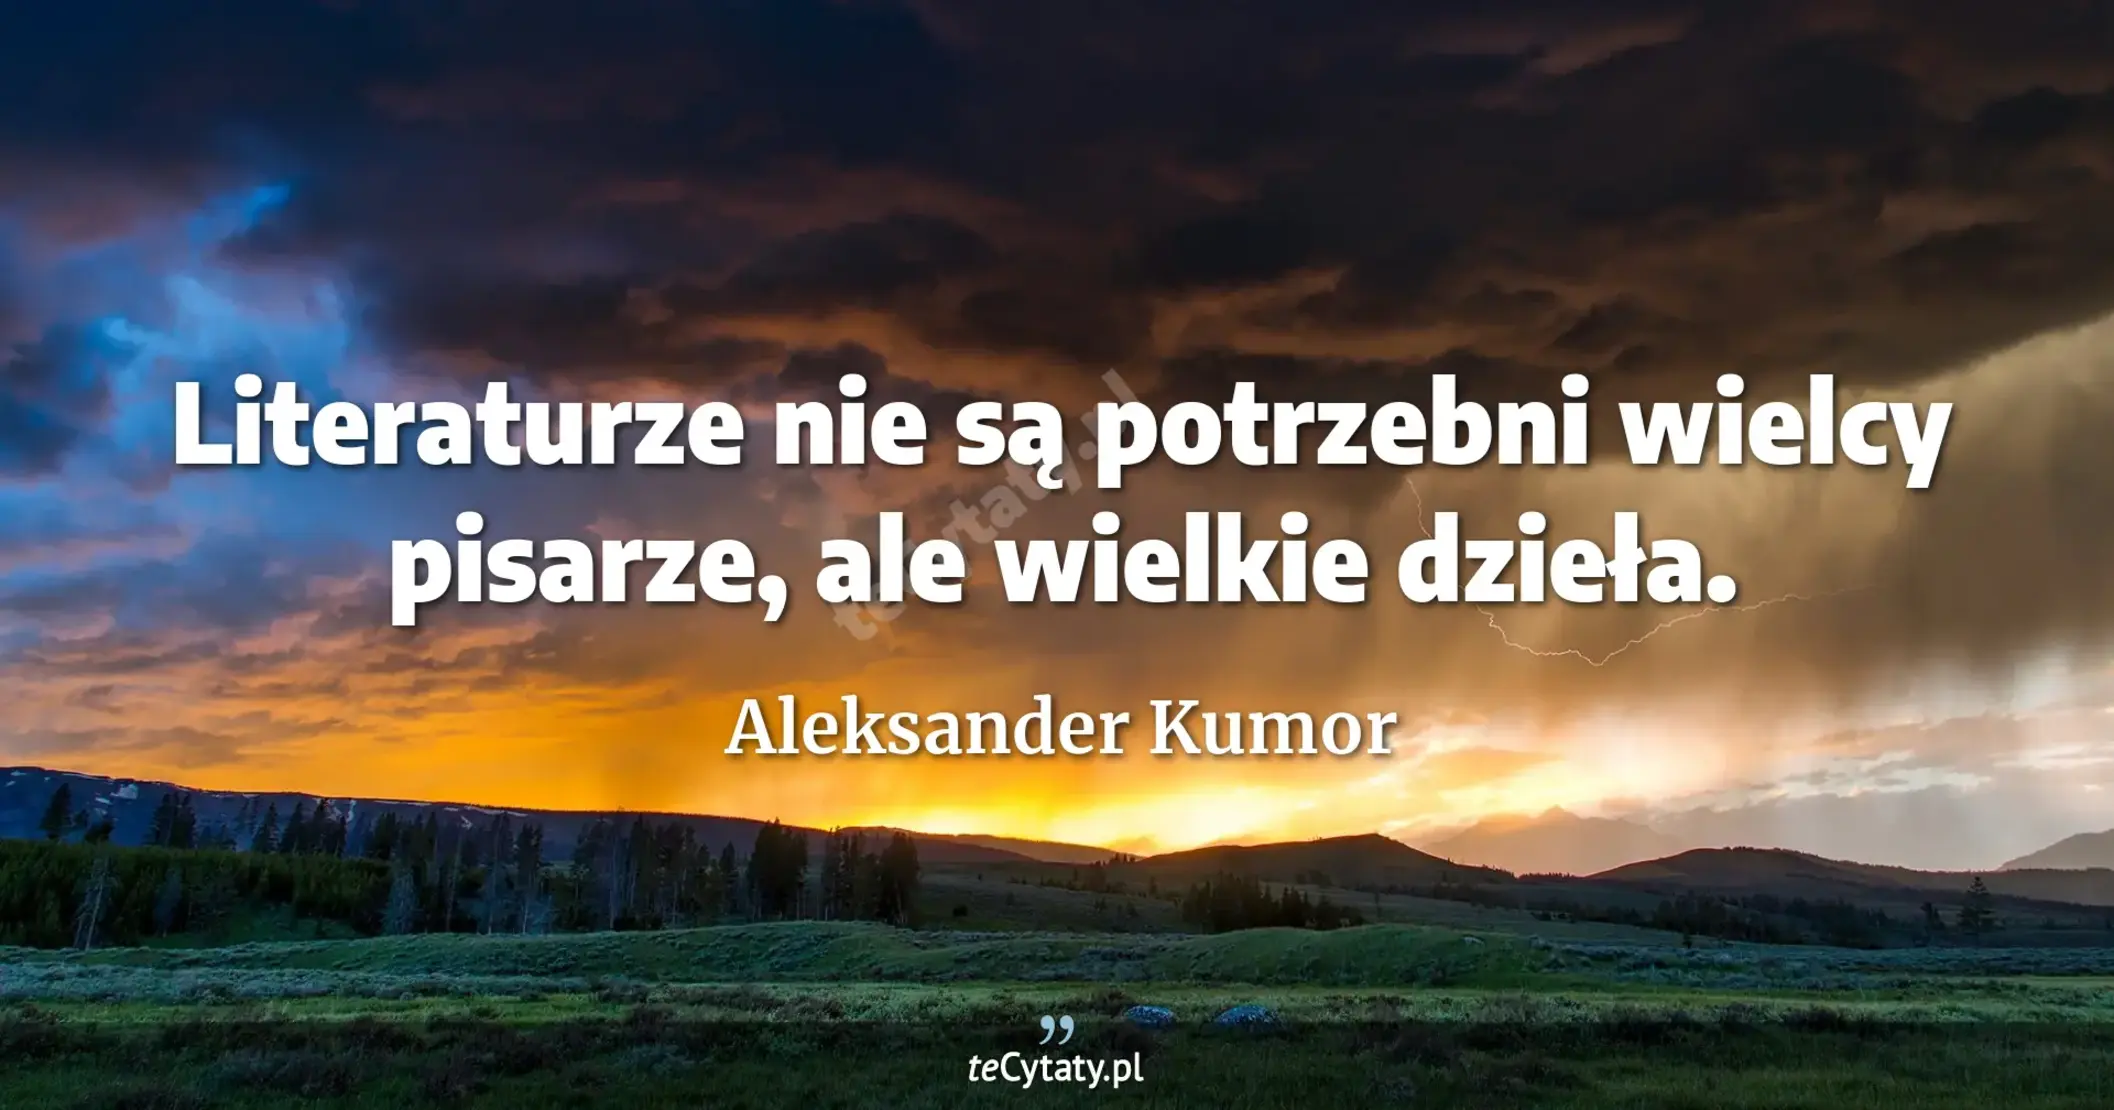 Literaturze nie są potrzebni wielcy pisarze, ale wielkie dzieła. - Aleksander Kumor